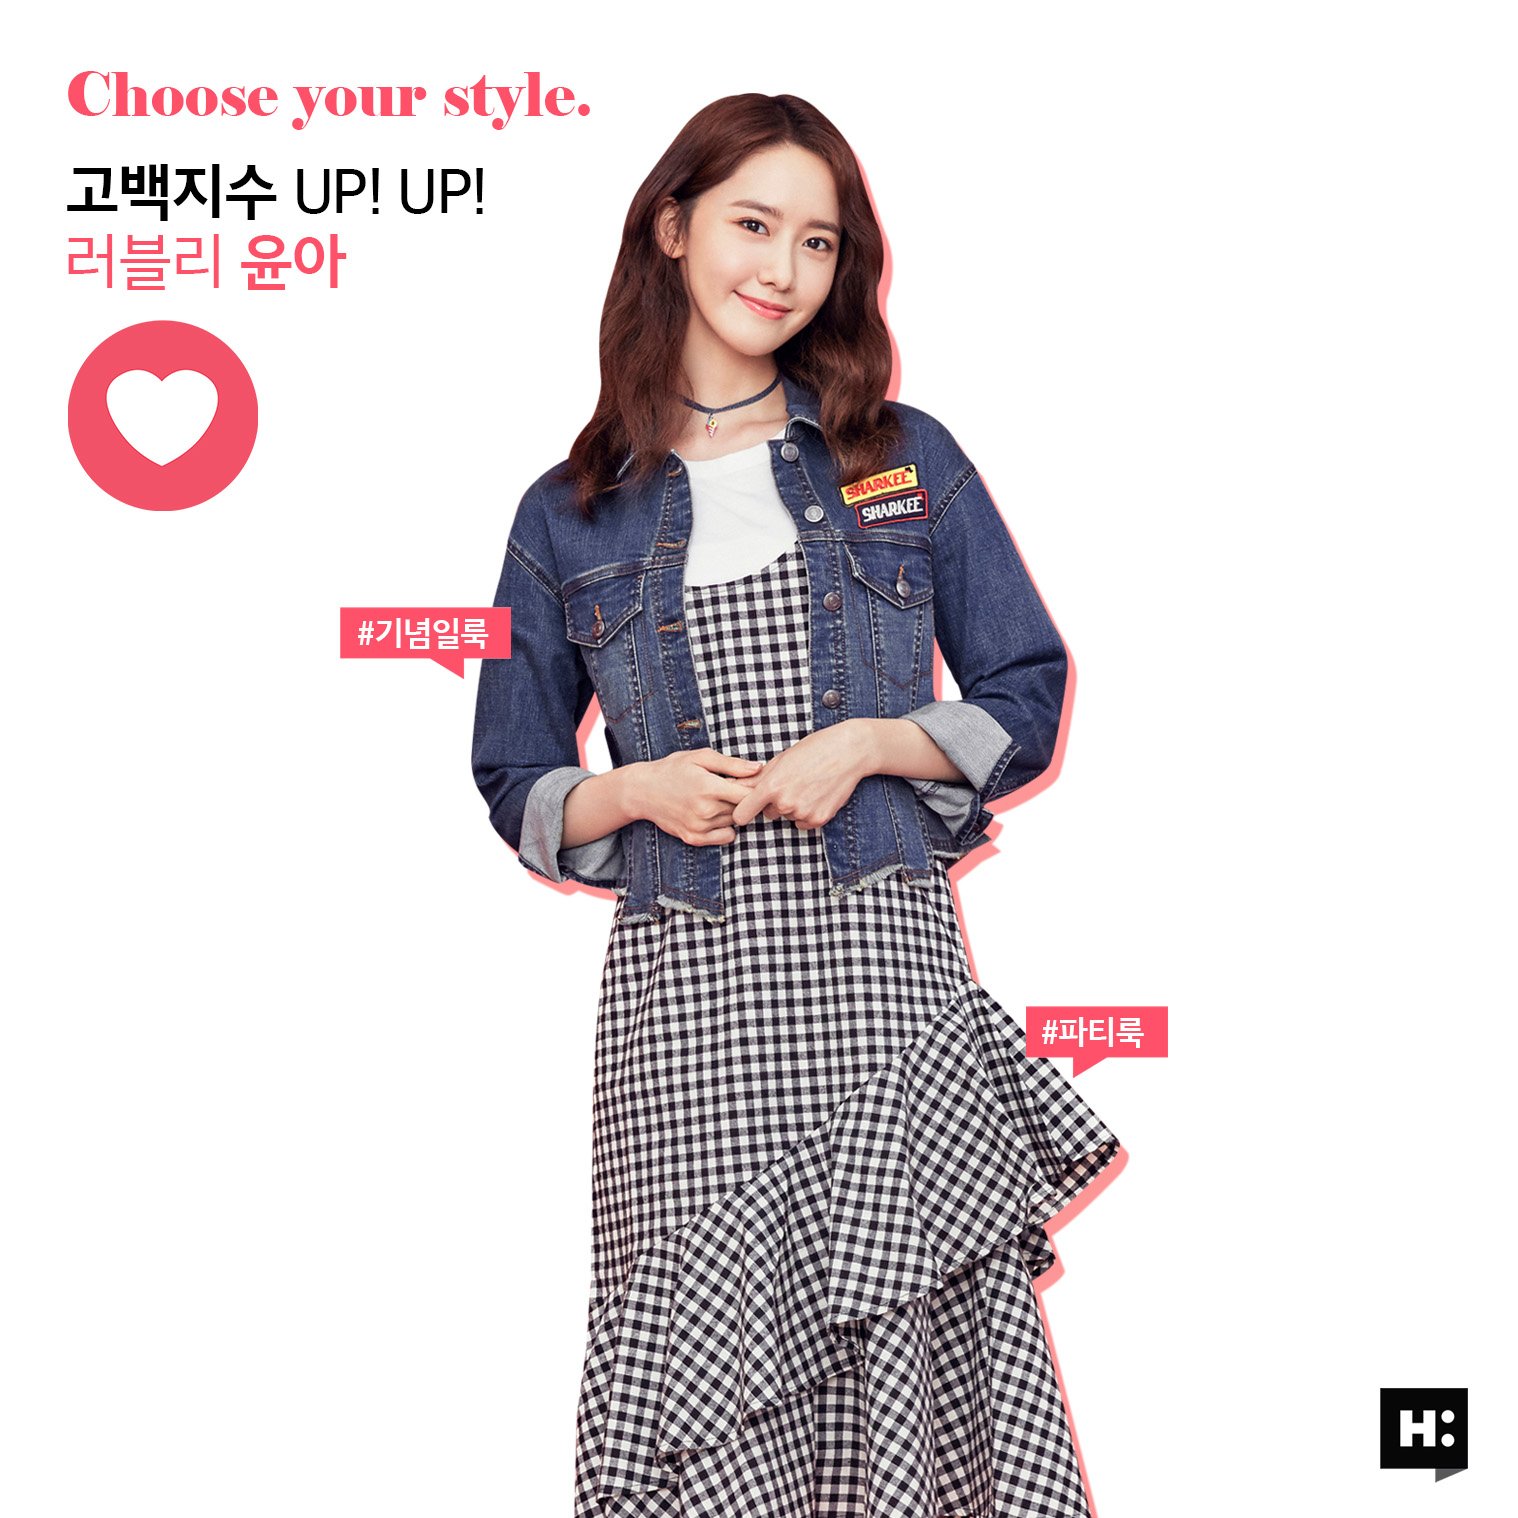 [OTHER][27-07-2015]YoonA trở thành người mẫu mới cho dòng thời trang "H:CONNECT" - Page 7 G-tLGoqIIo-3000x3000